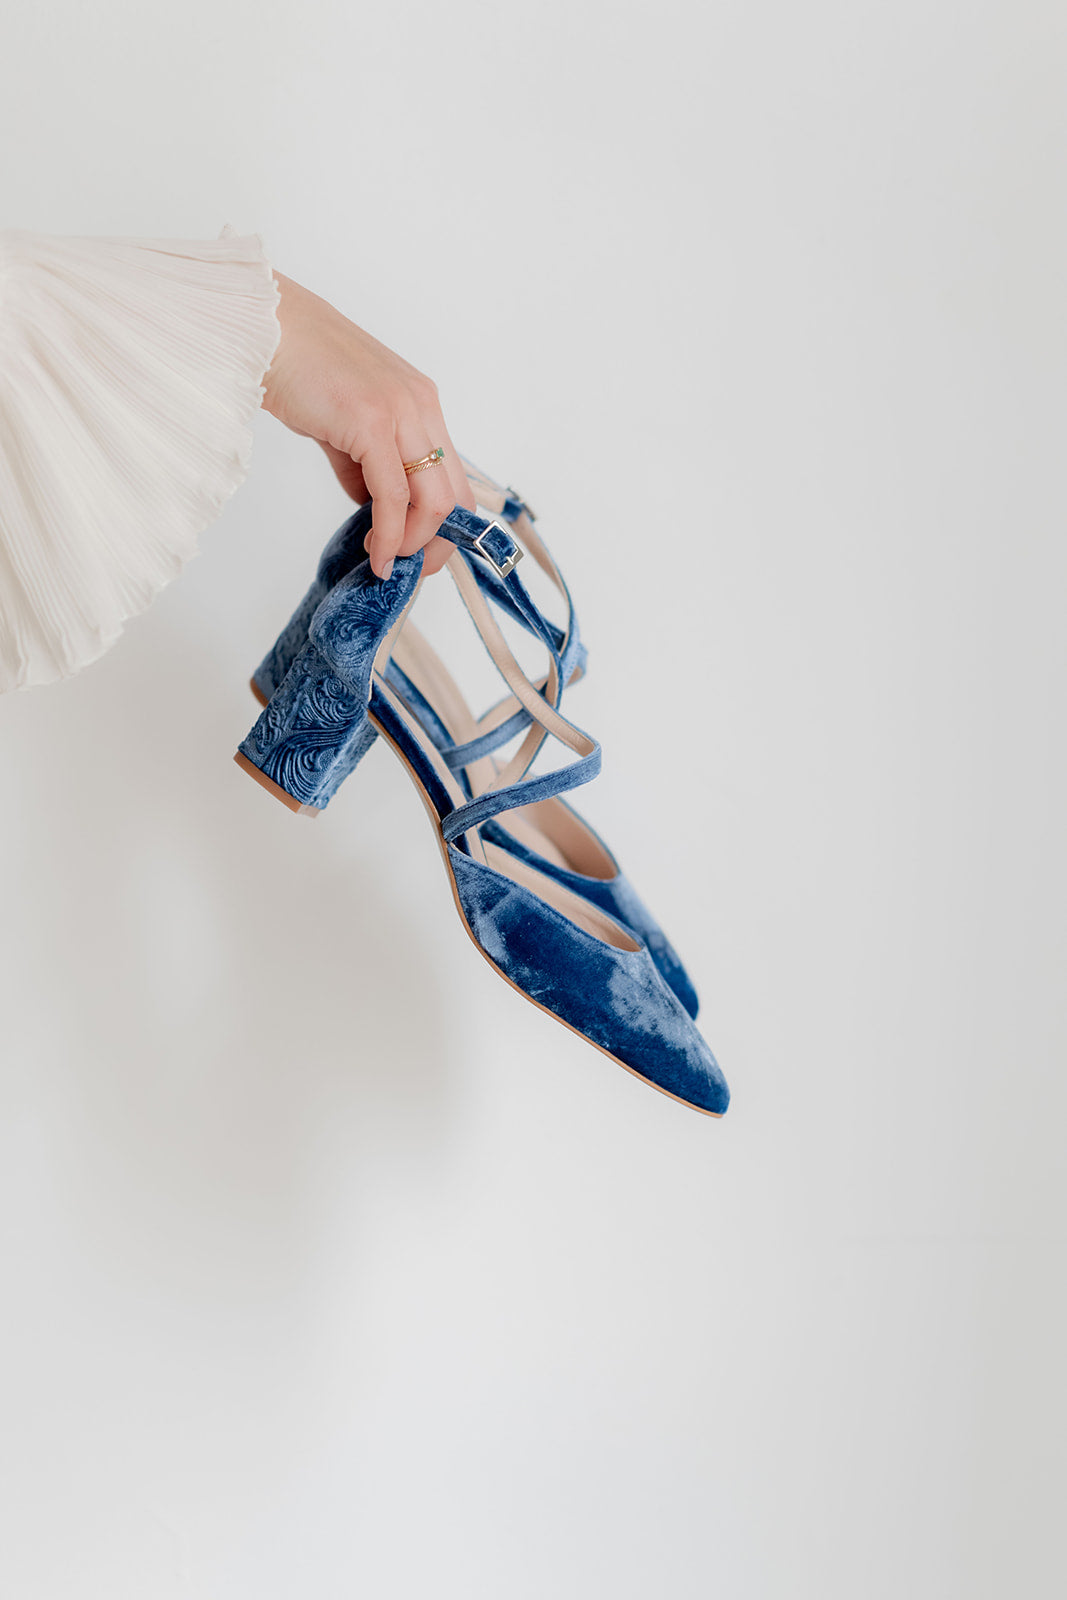 Celia Velvet Blue de 4.5 cm-tipo salón-celia, cápsula velvet collection, liso, novia, salón, tacón de 4.5, terciopelo, terciopelo azul, zapatos de color azul-Loovshoes